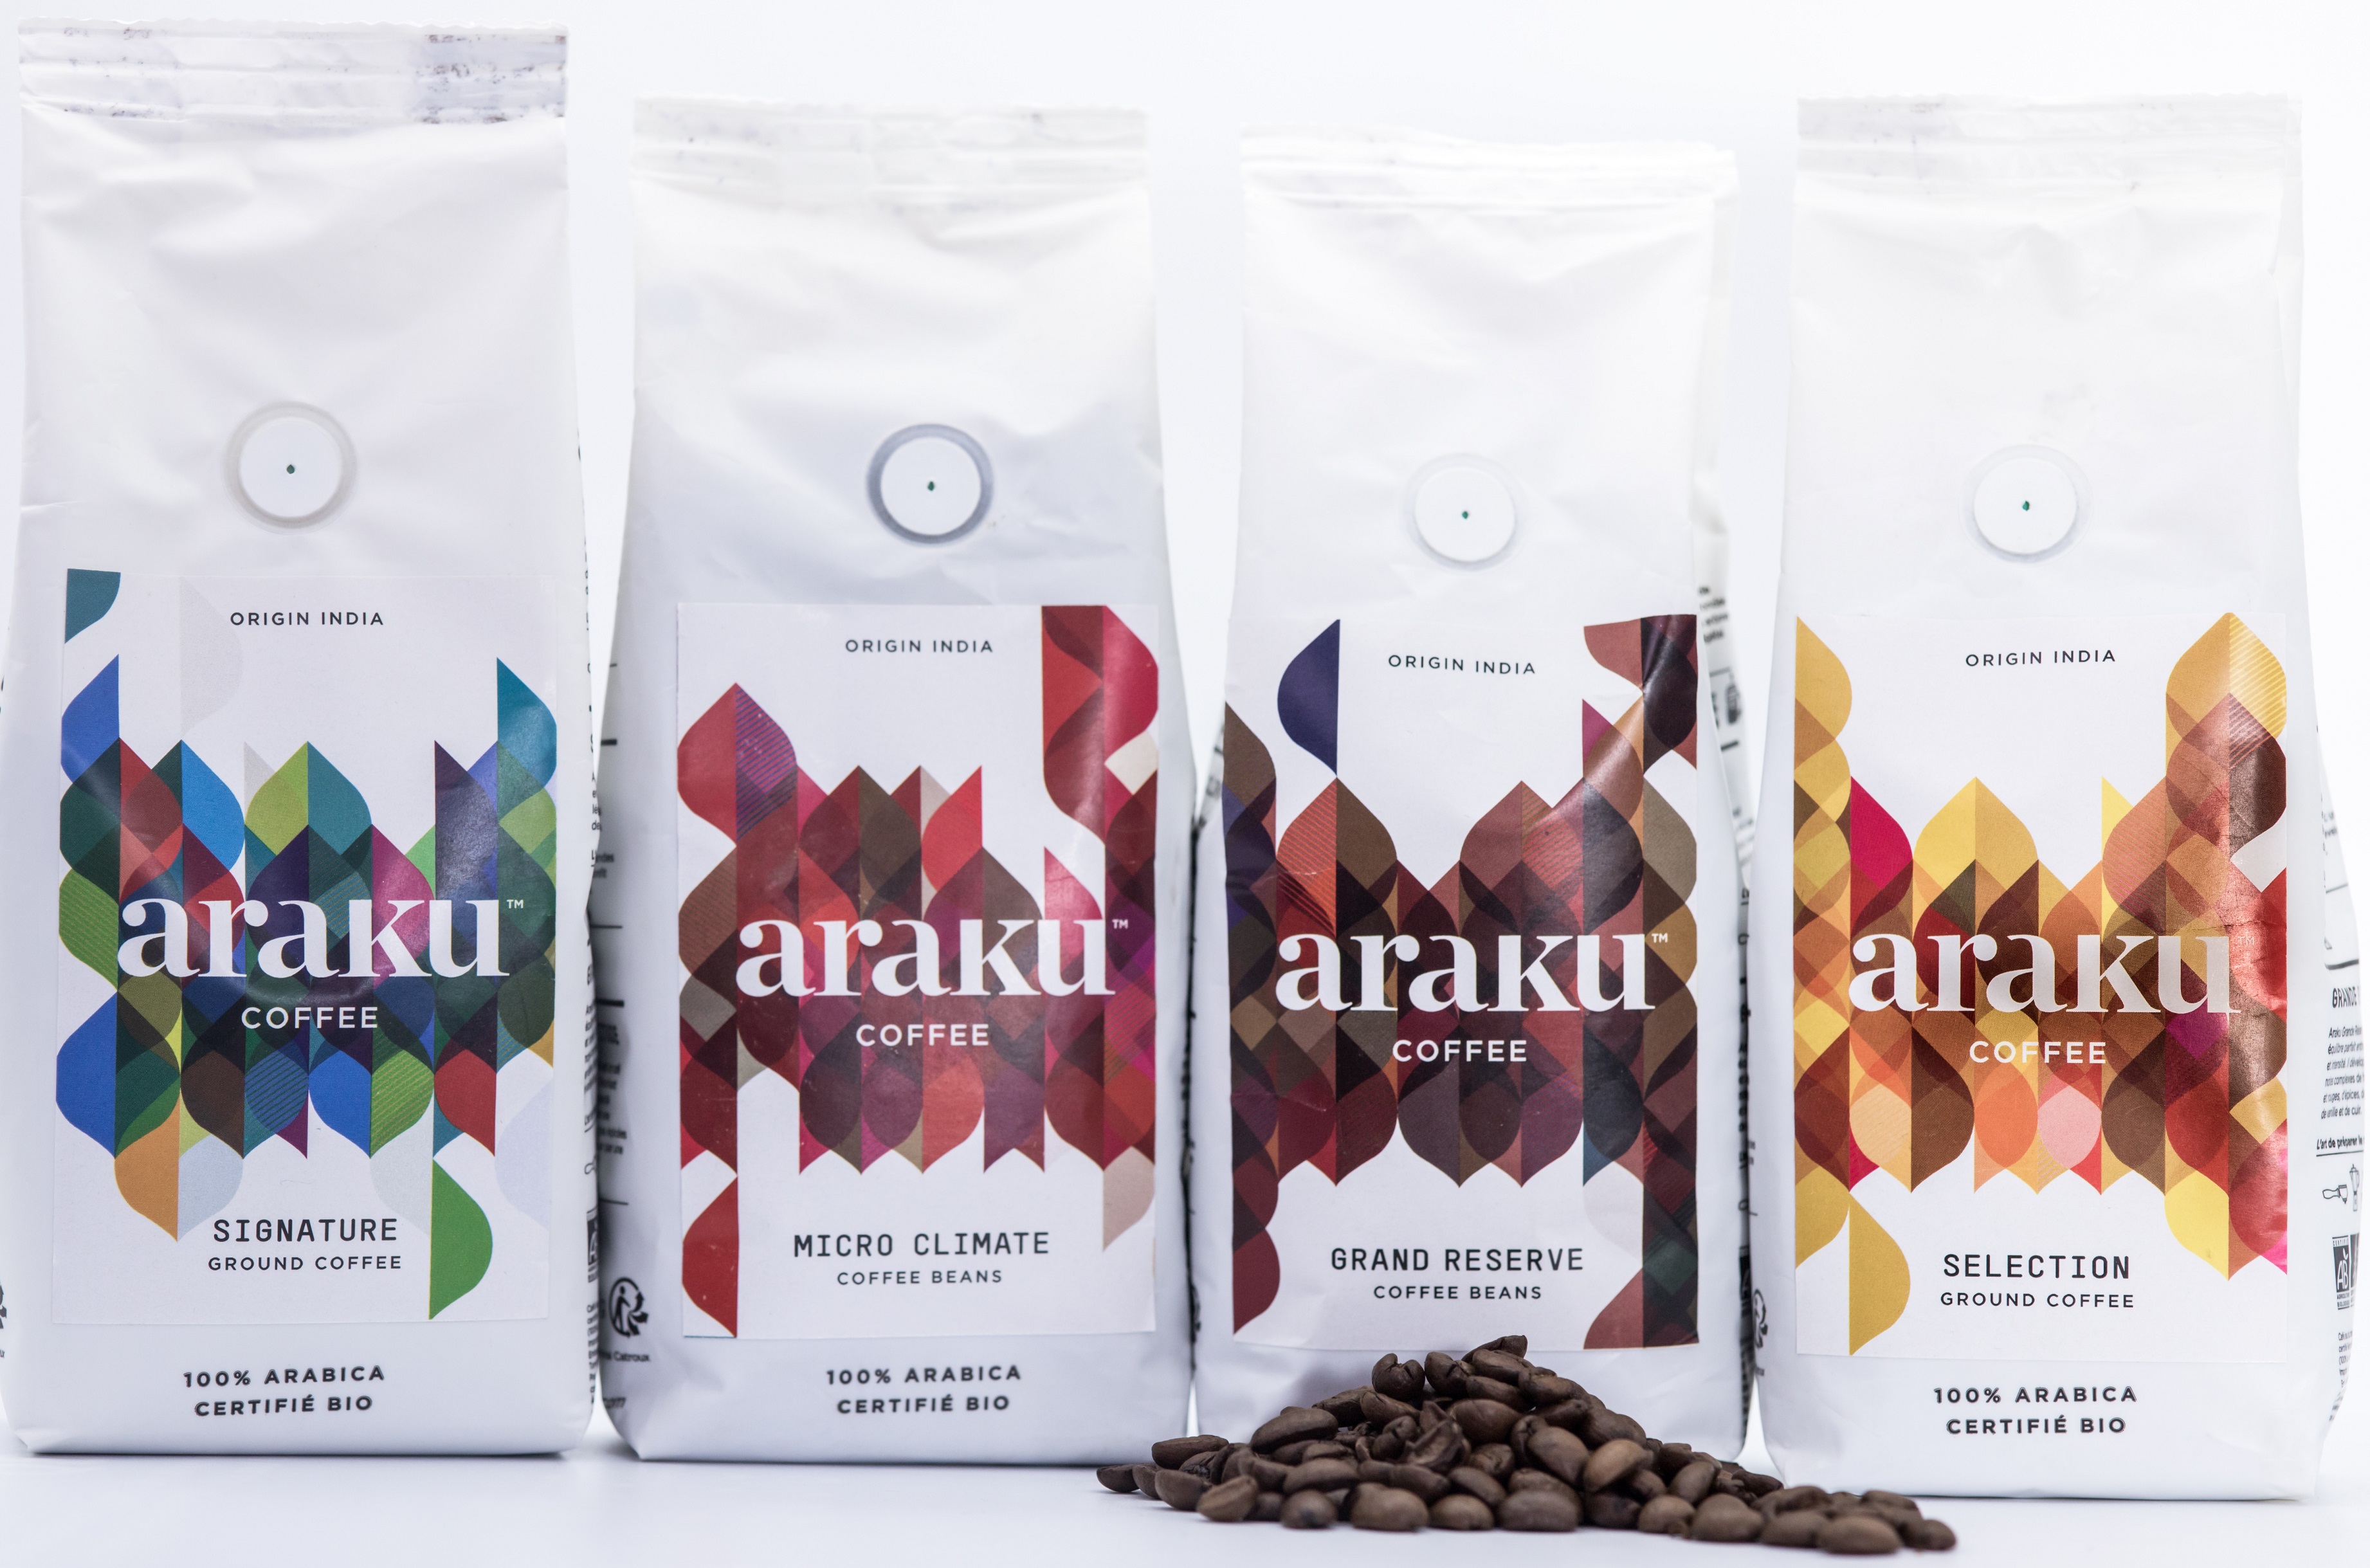 Araku Coffee India